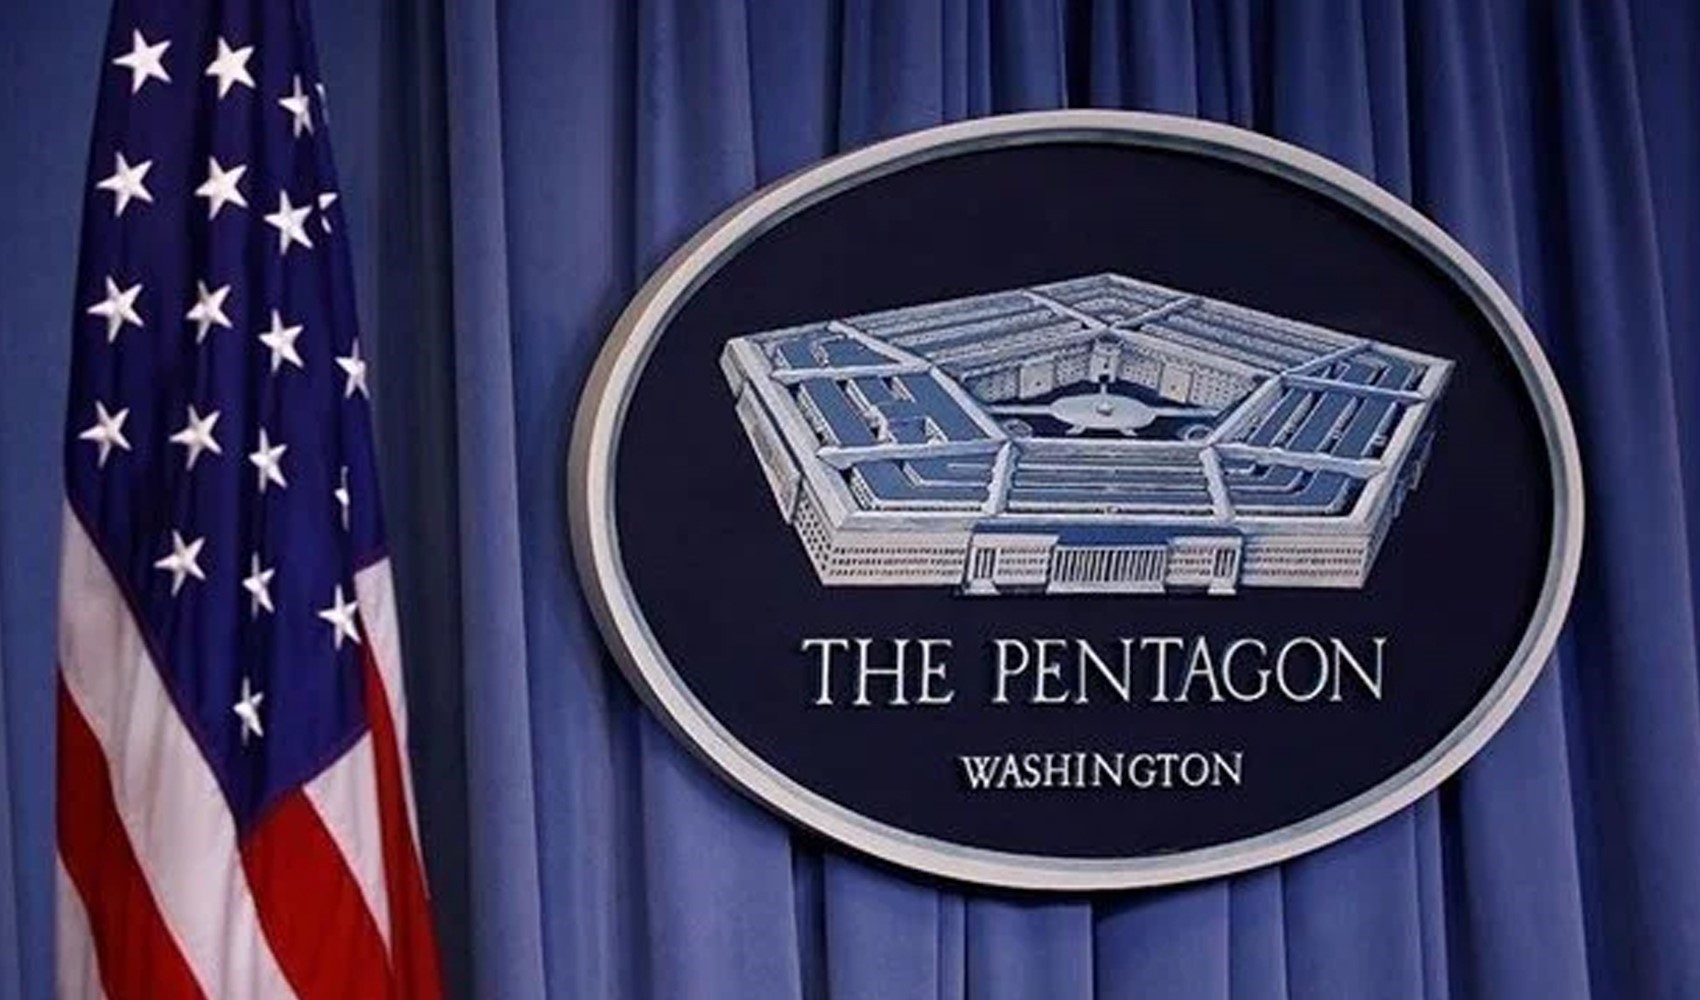 İsrail ile İran arasındaki gerilime ilişkin Pentagon'dan açıklama!